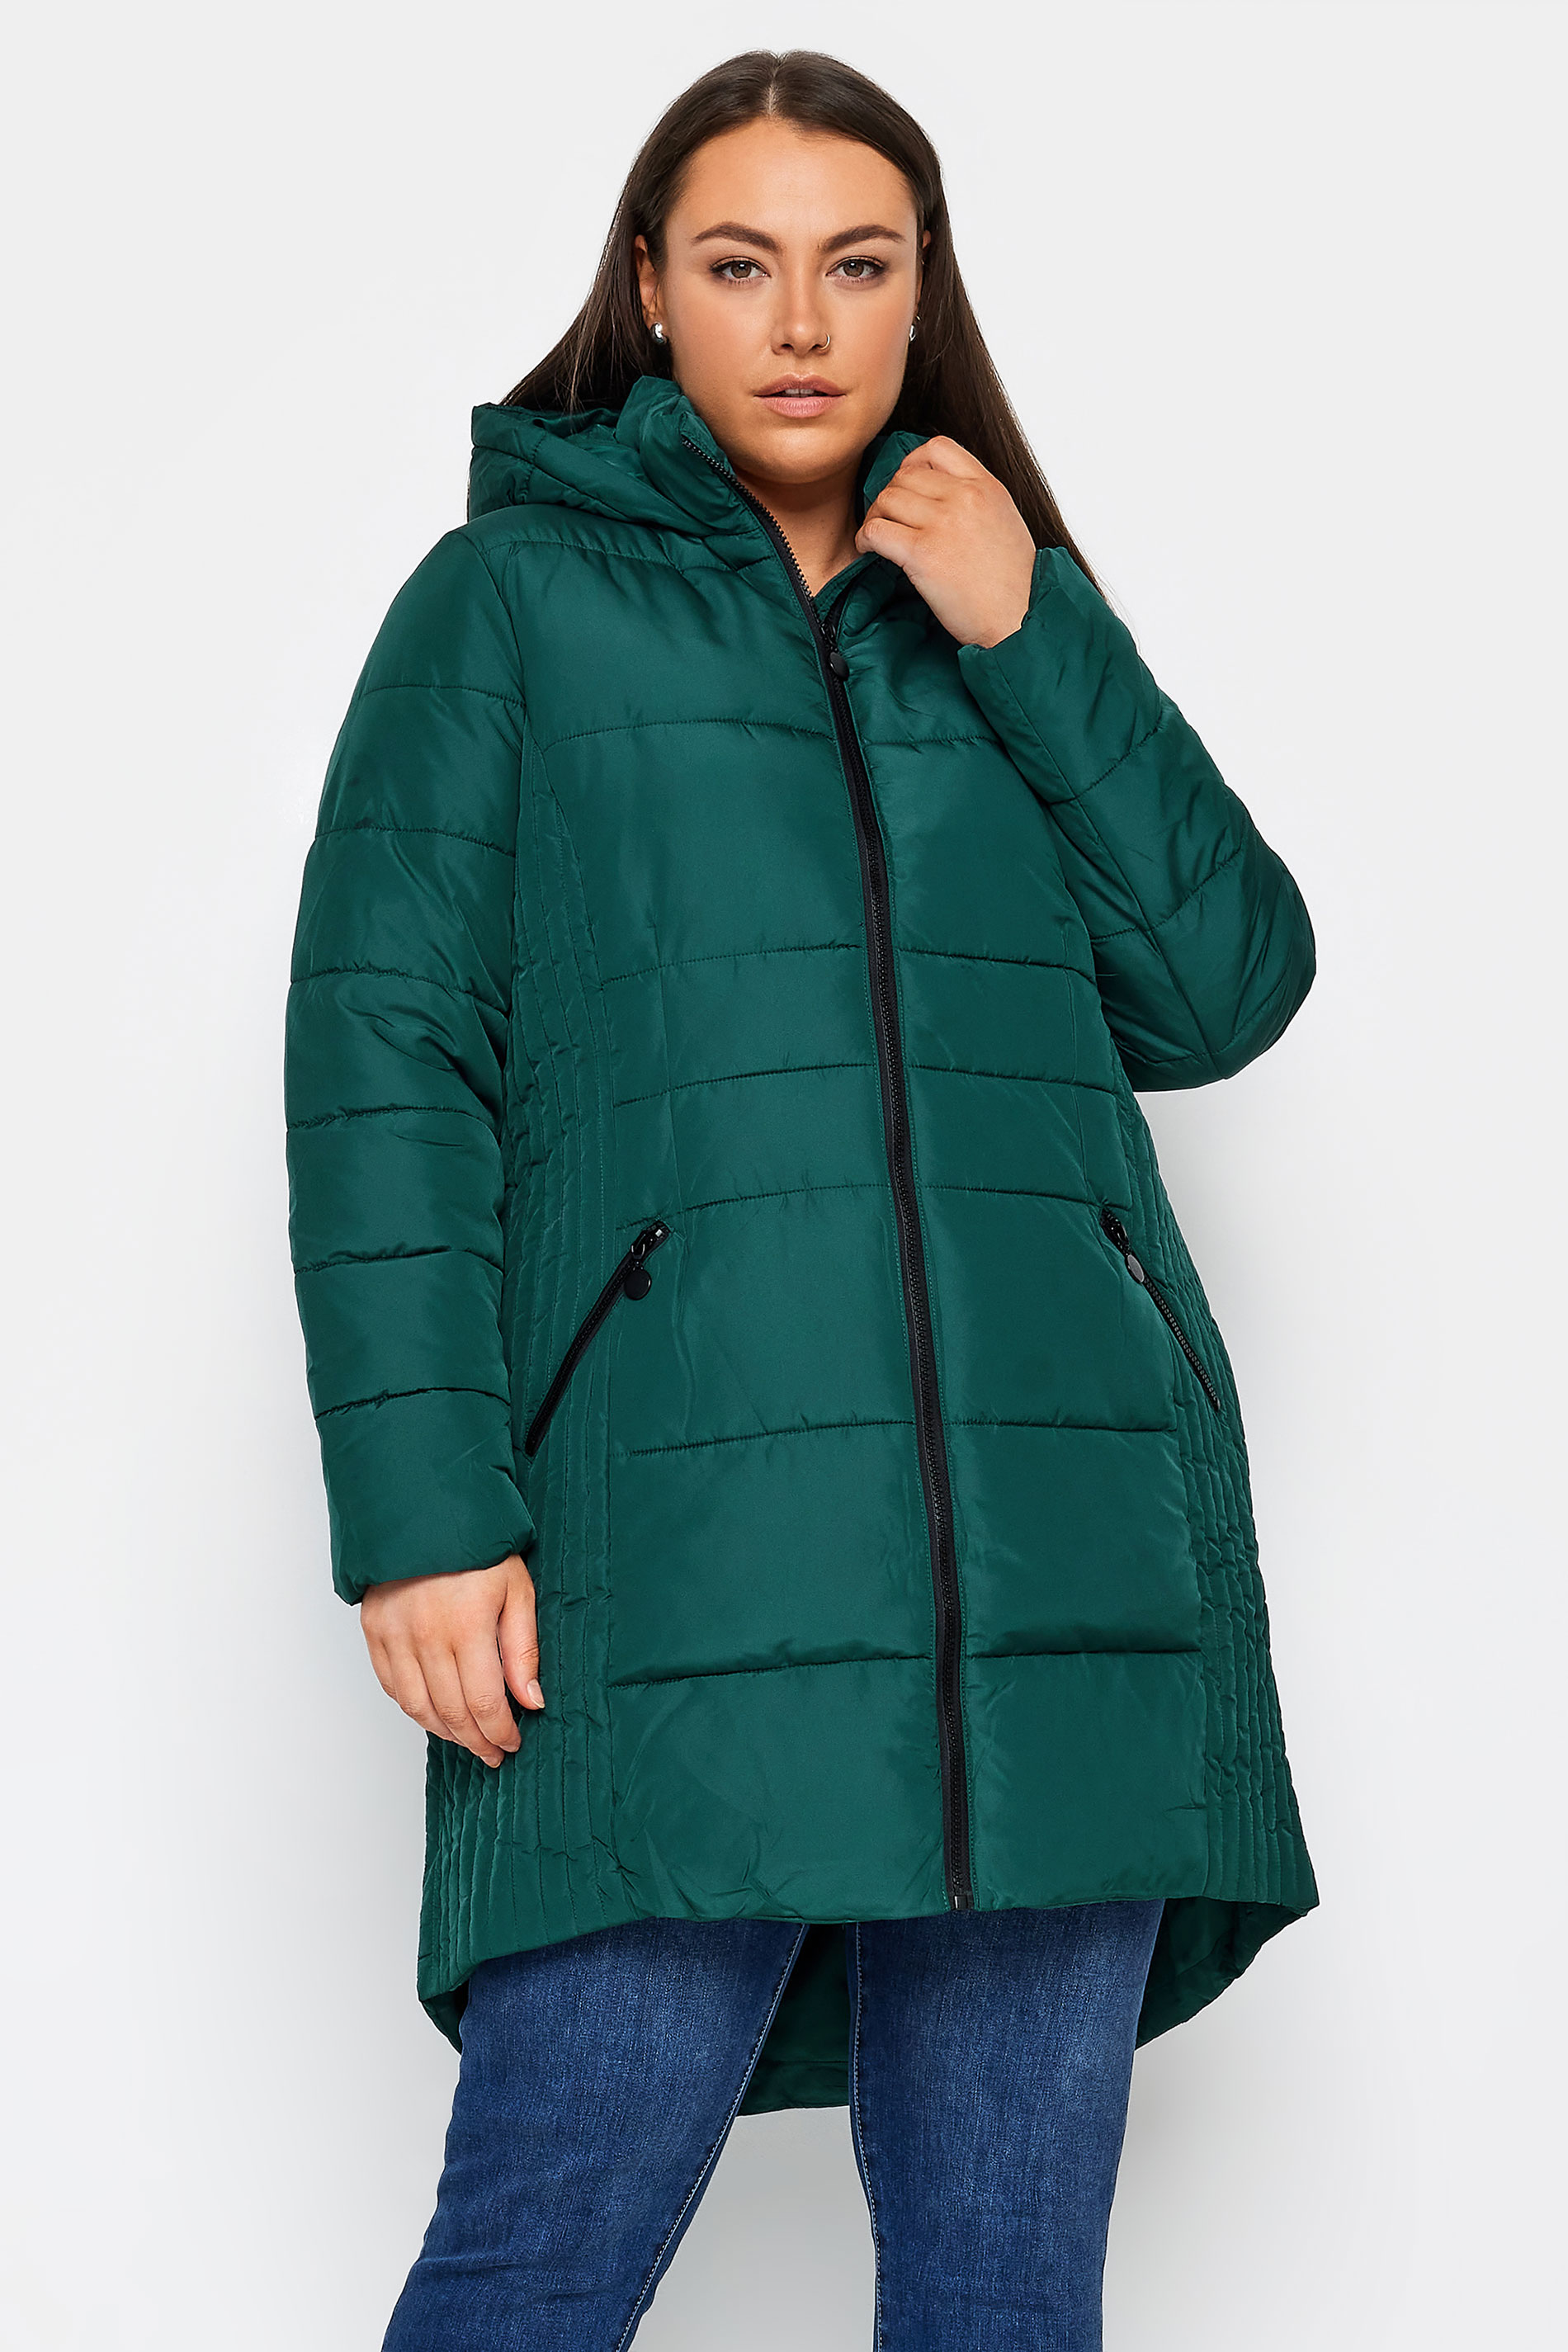 Contrast Zip Green Coat 1